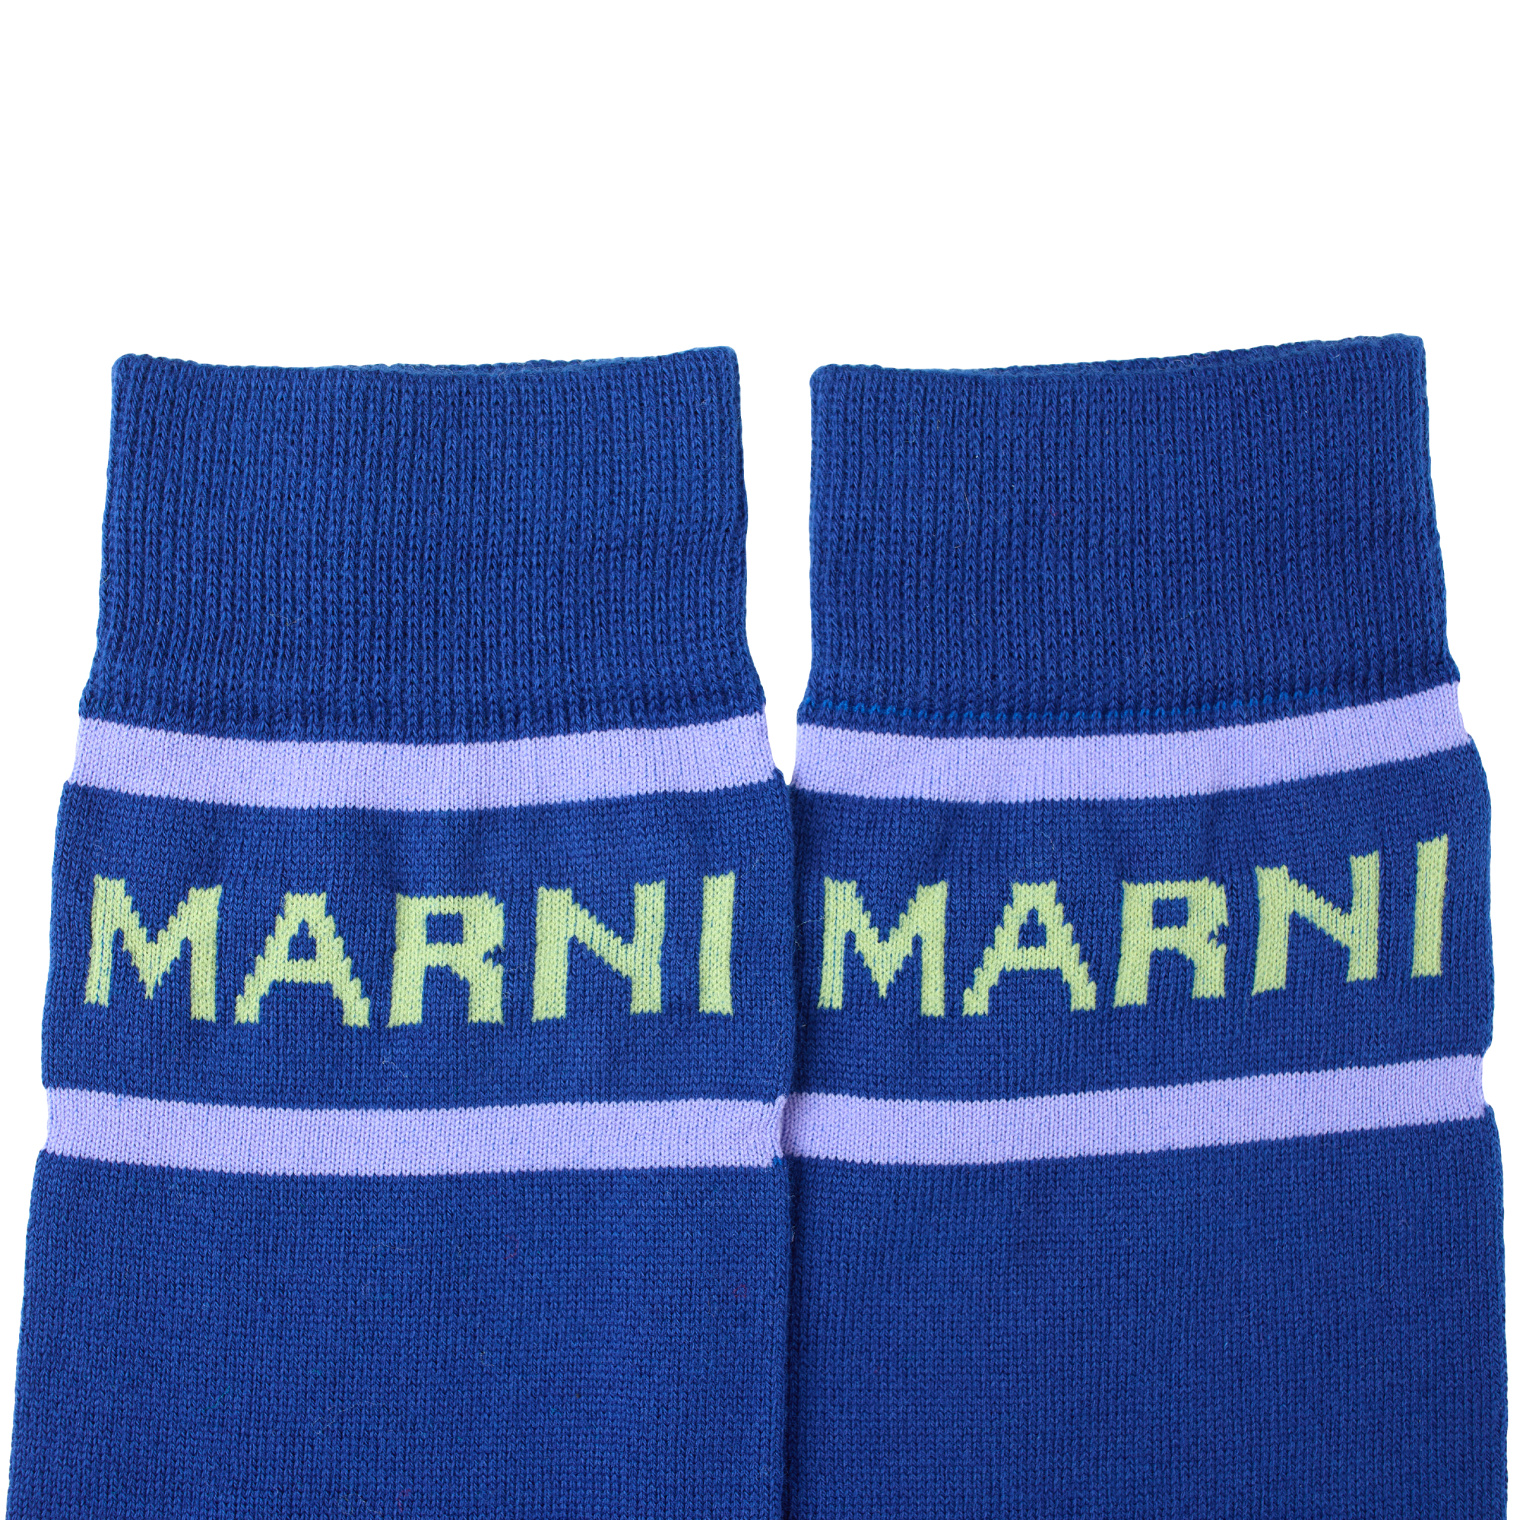 Marni Синие носки с логотипом